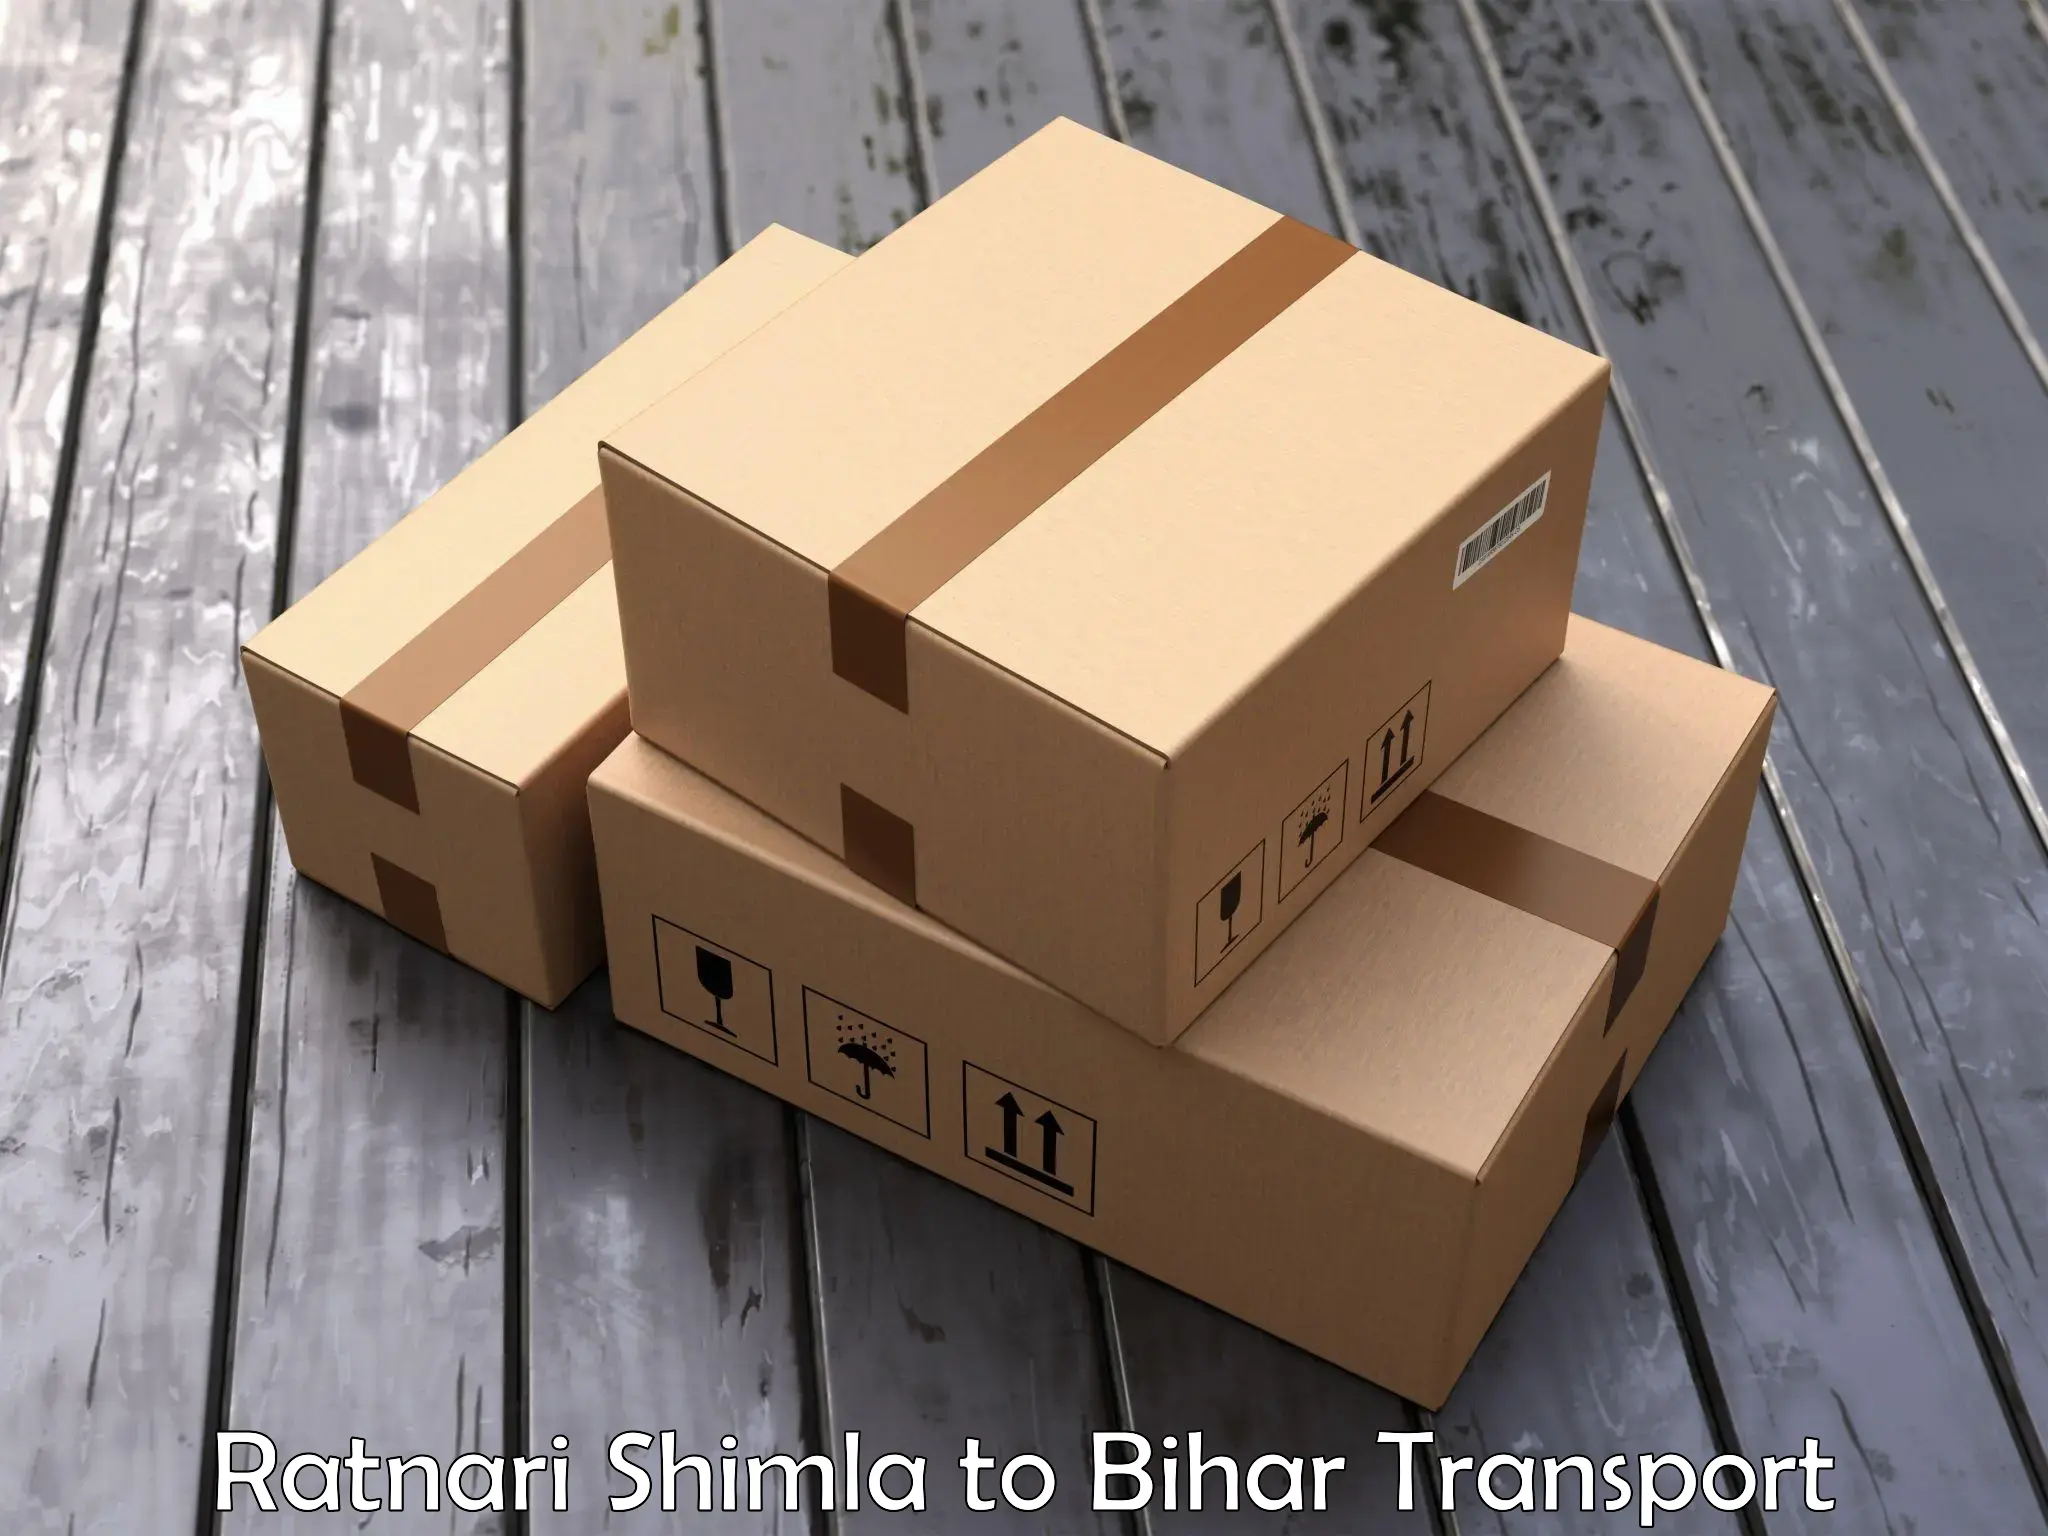 Commercial transport service Ratnari Shimla to Sonbarsa